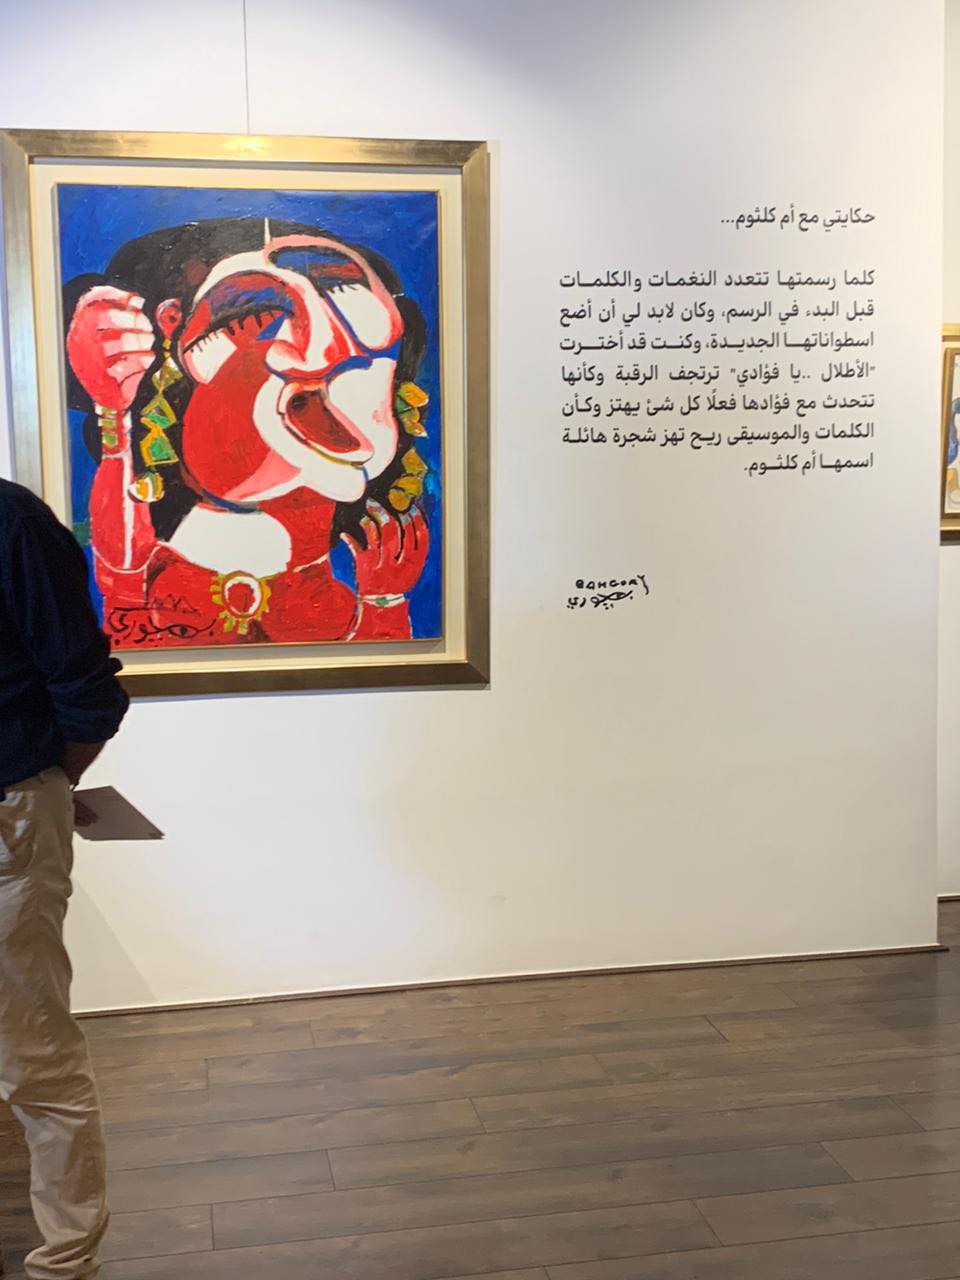  معرض للفنان جورج بهجوري وفناني الكاريكاتير بحضور عدد من الفنانين التشكيليين.